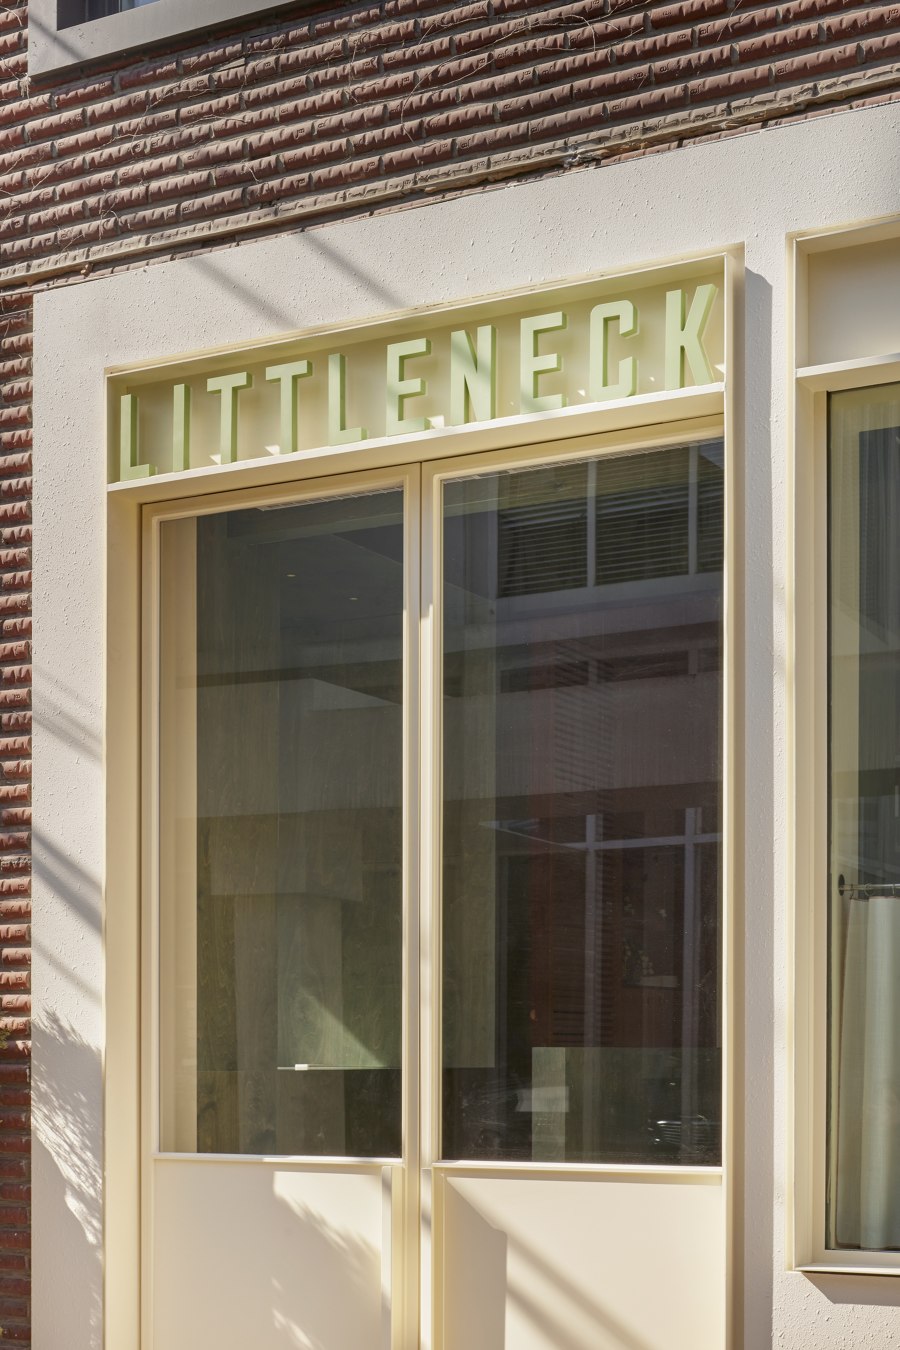 Littleneck Restaurant | Restaurant interiors | SLA